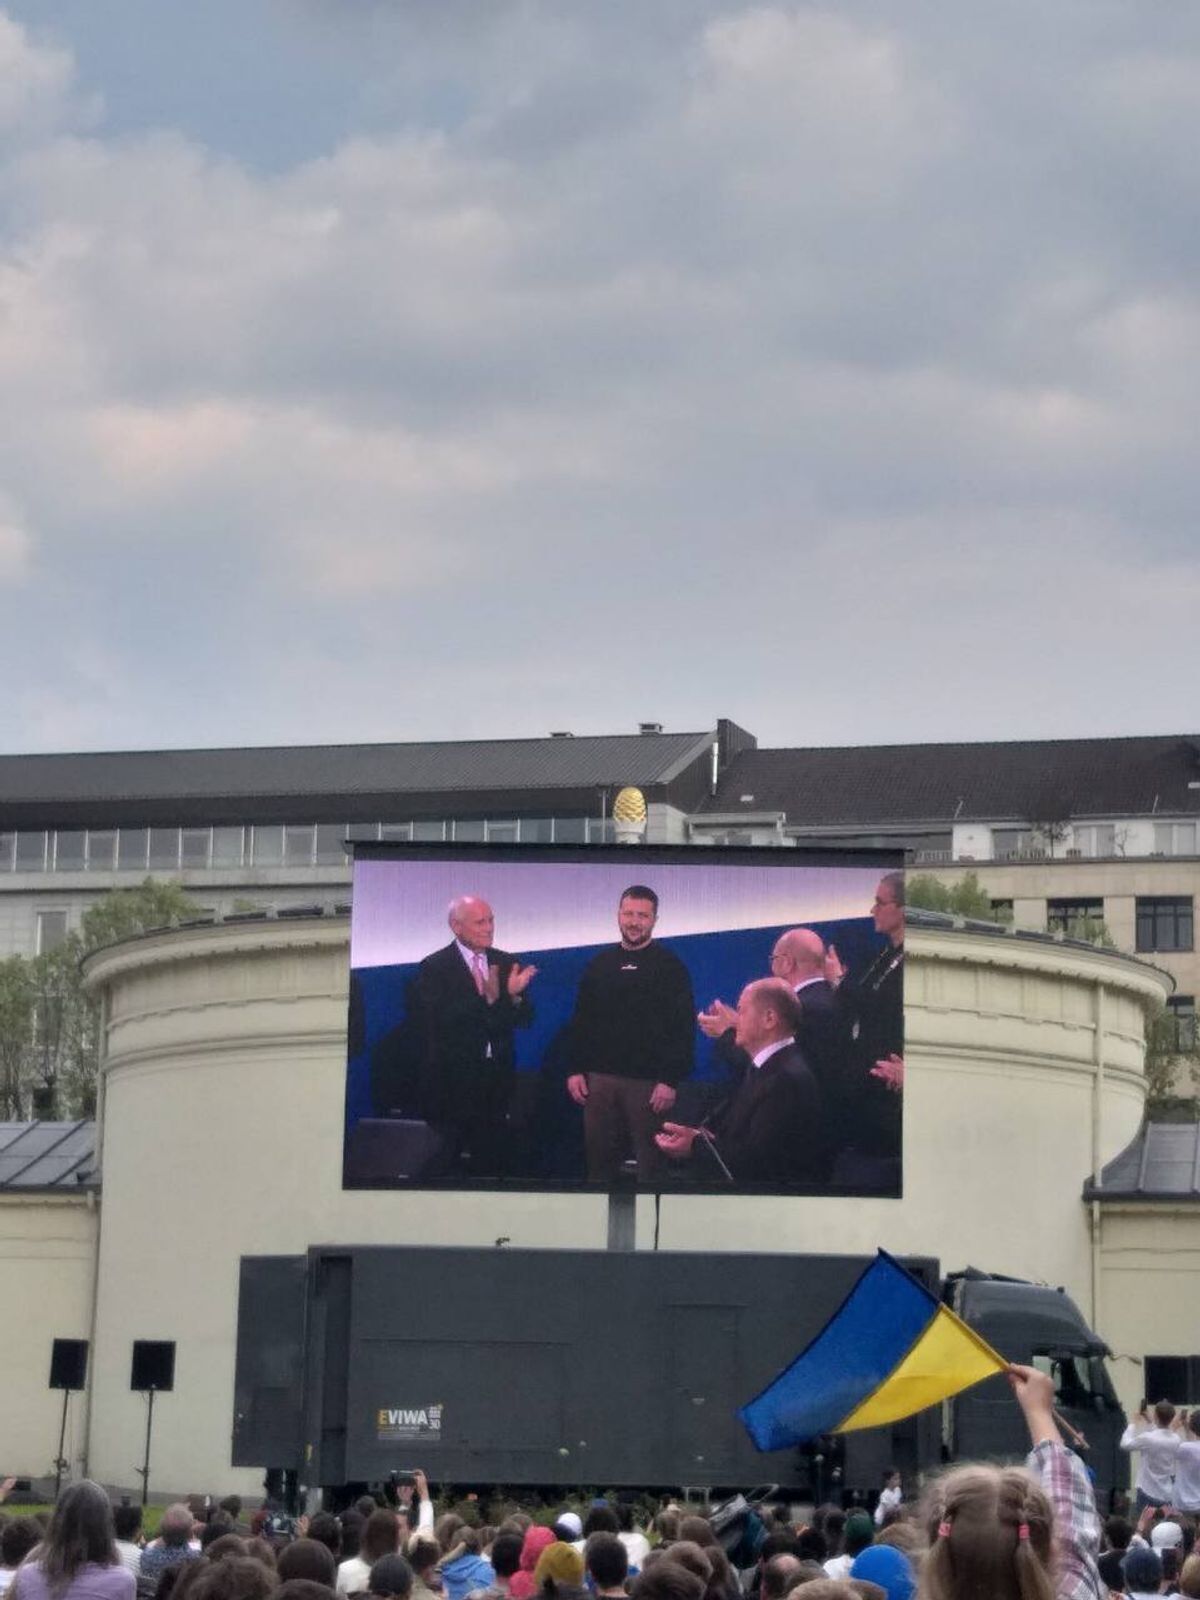 Люди спостерігали за президентом України